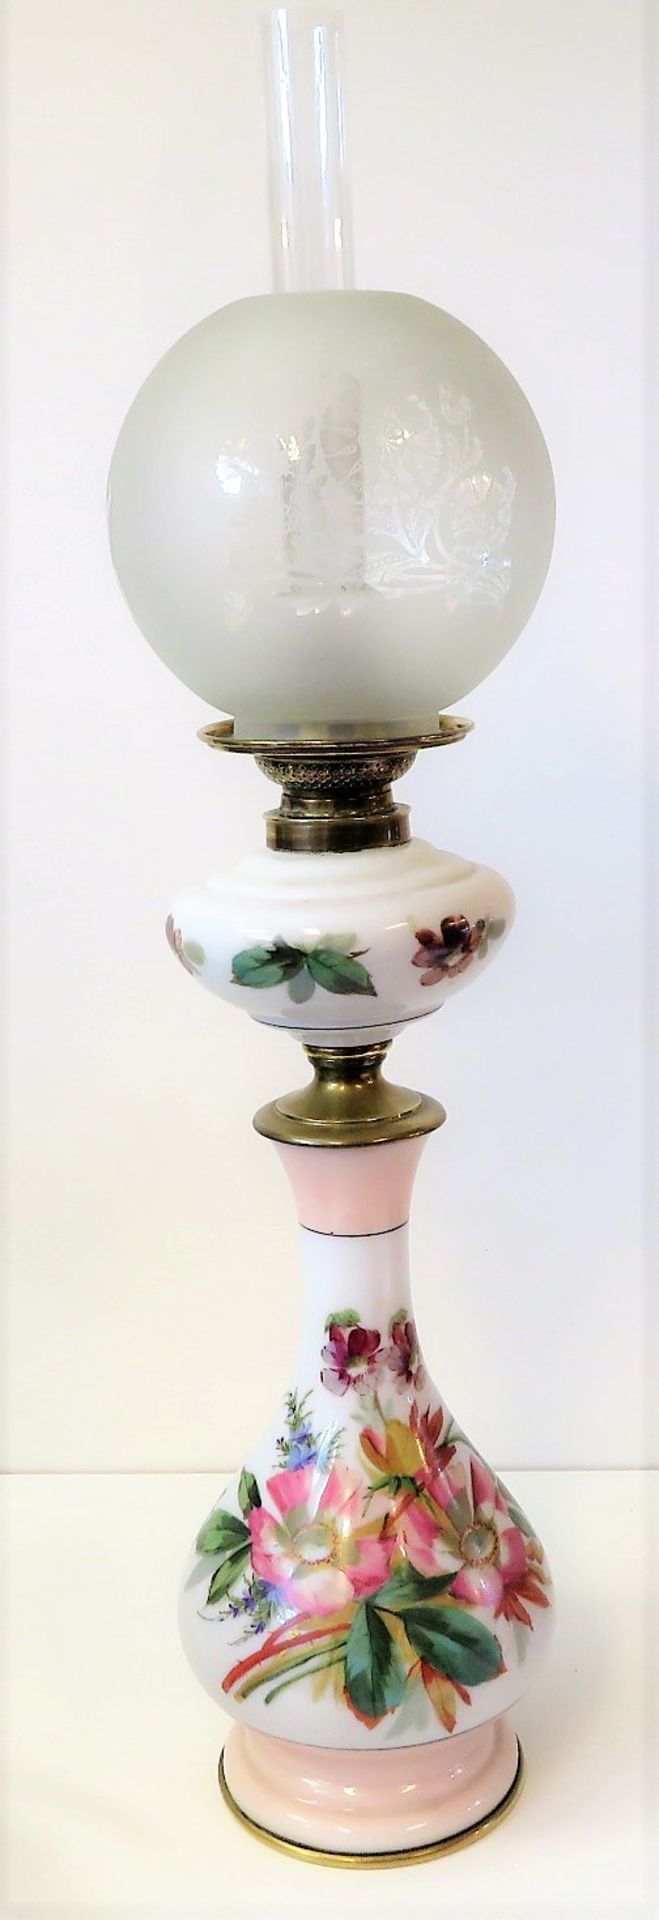 Petroleumlampe, Biedermeier, 19. Jahrhundert, Weißporzellan mit polychromer Blütenbemalung, h 74 cm